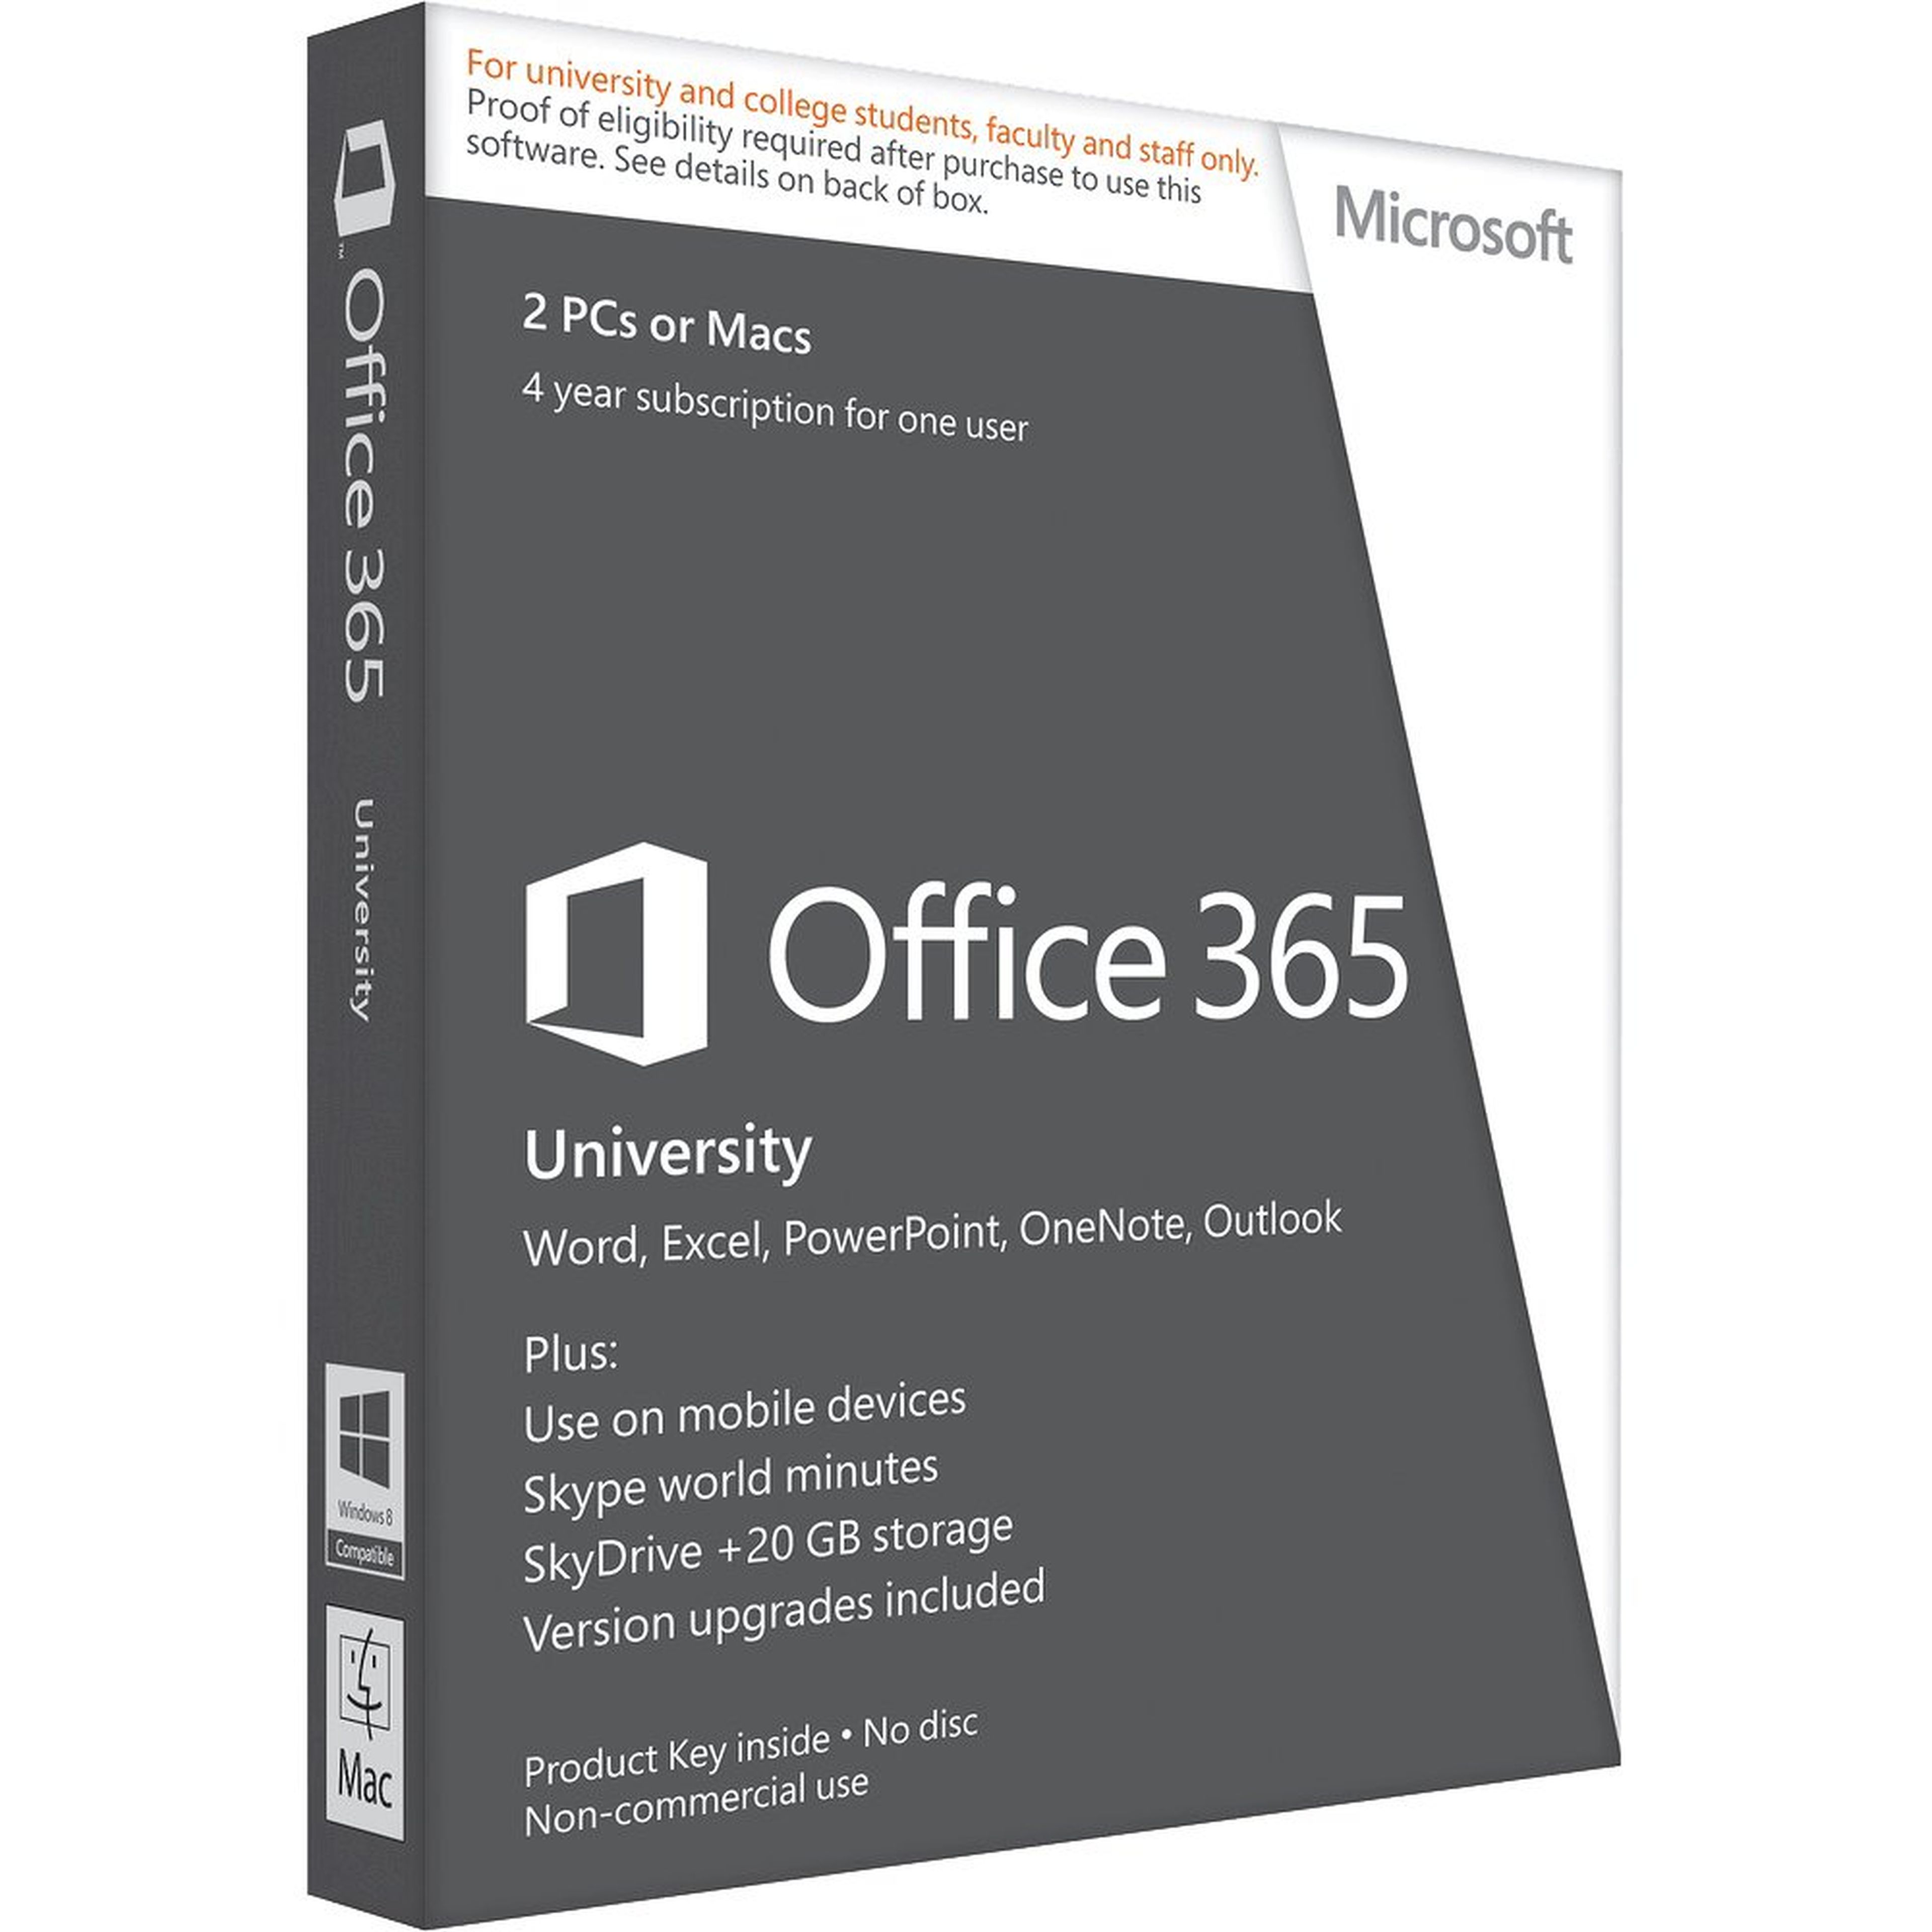 Office 365 gratuito para universitarios